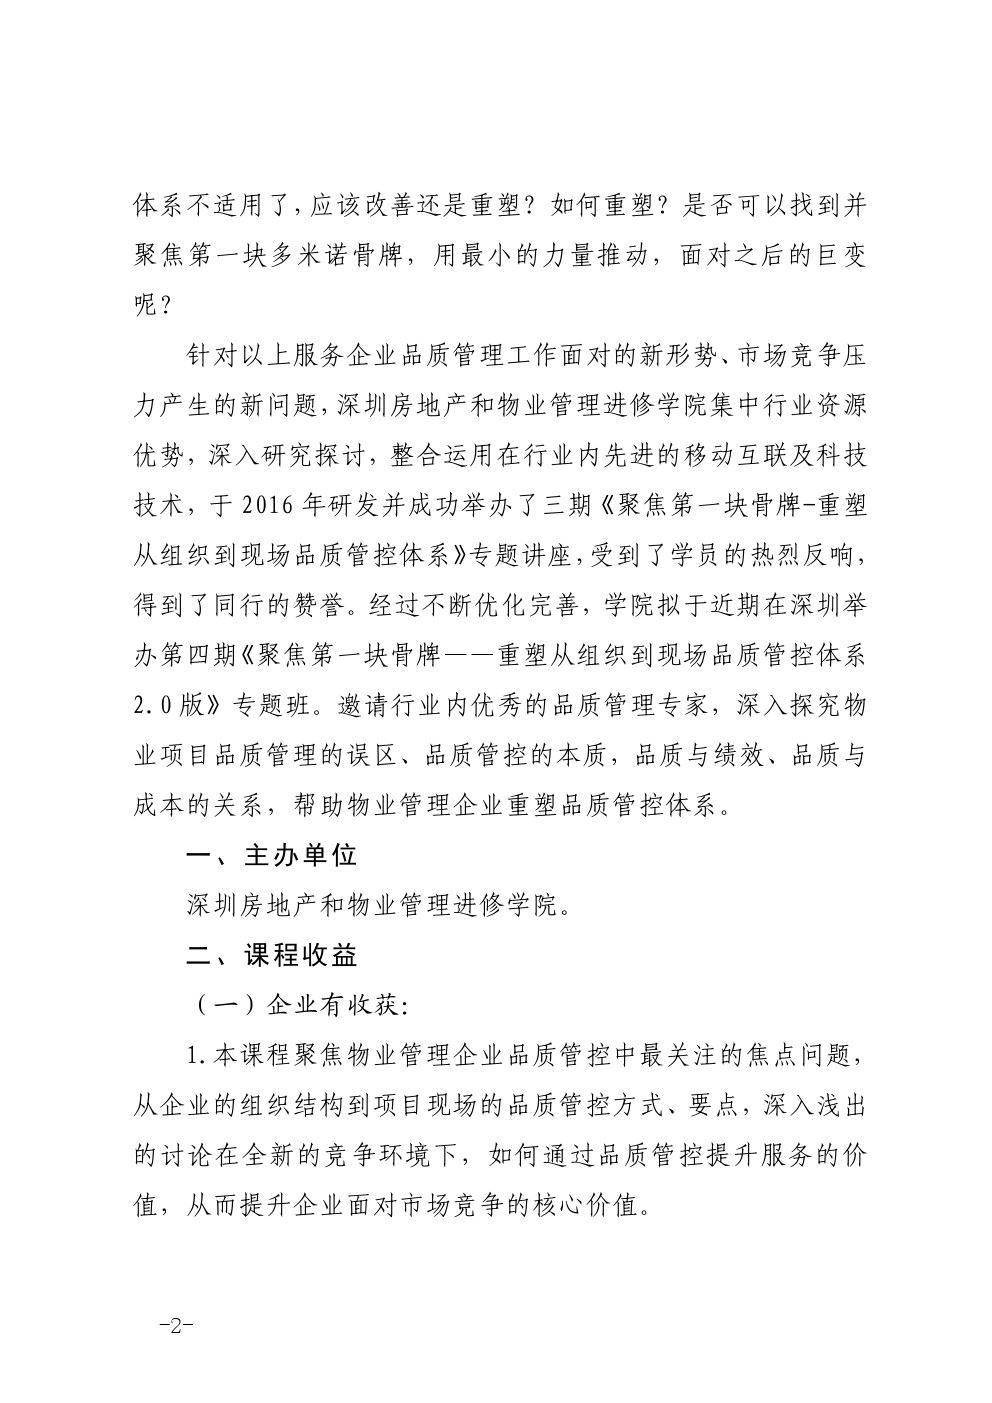 深圳举办《聚焦第一块骨牌—— 重塑从组织到现场的品质管控体系  2.0 版》专题班的通知图二